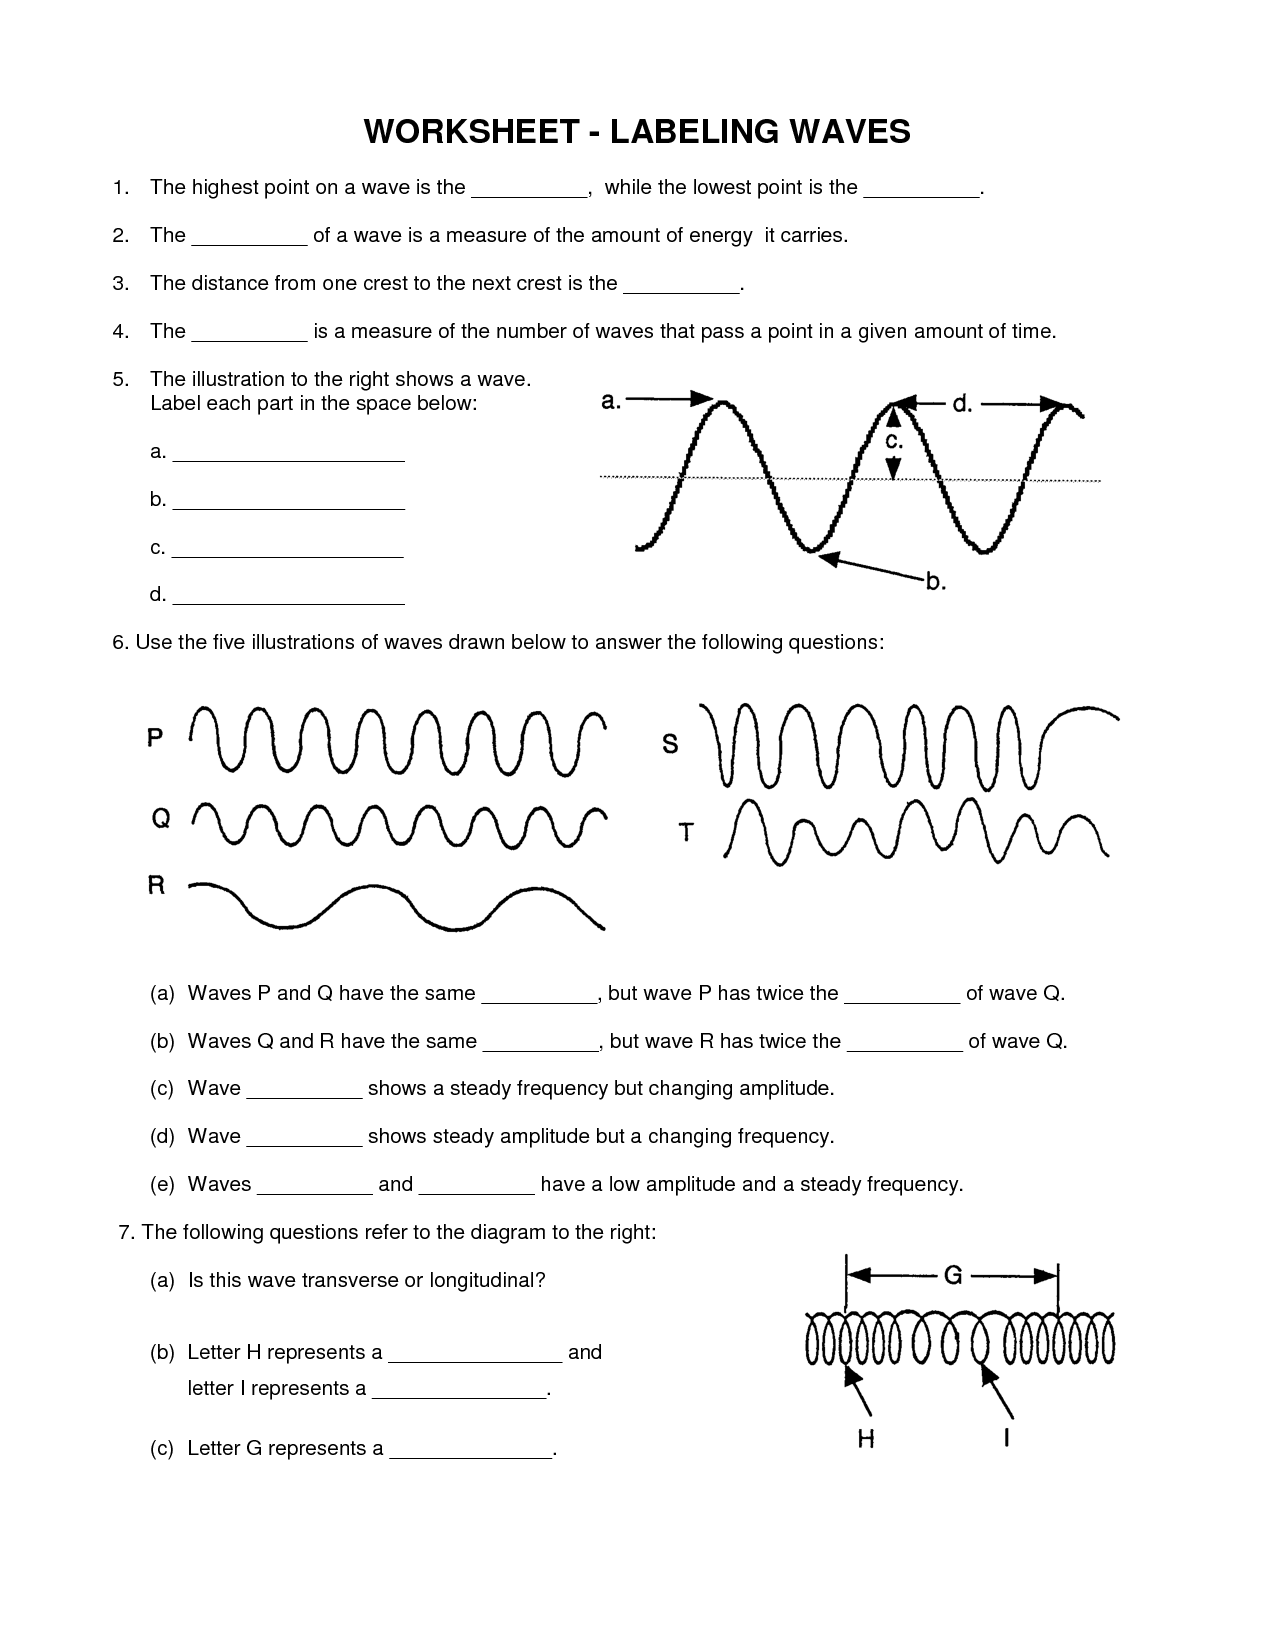 13 Images of Sound Wave Science Worksheets For Kids